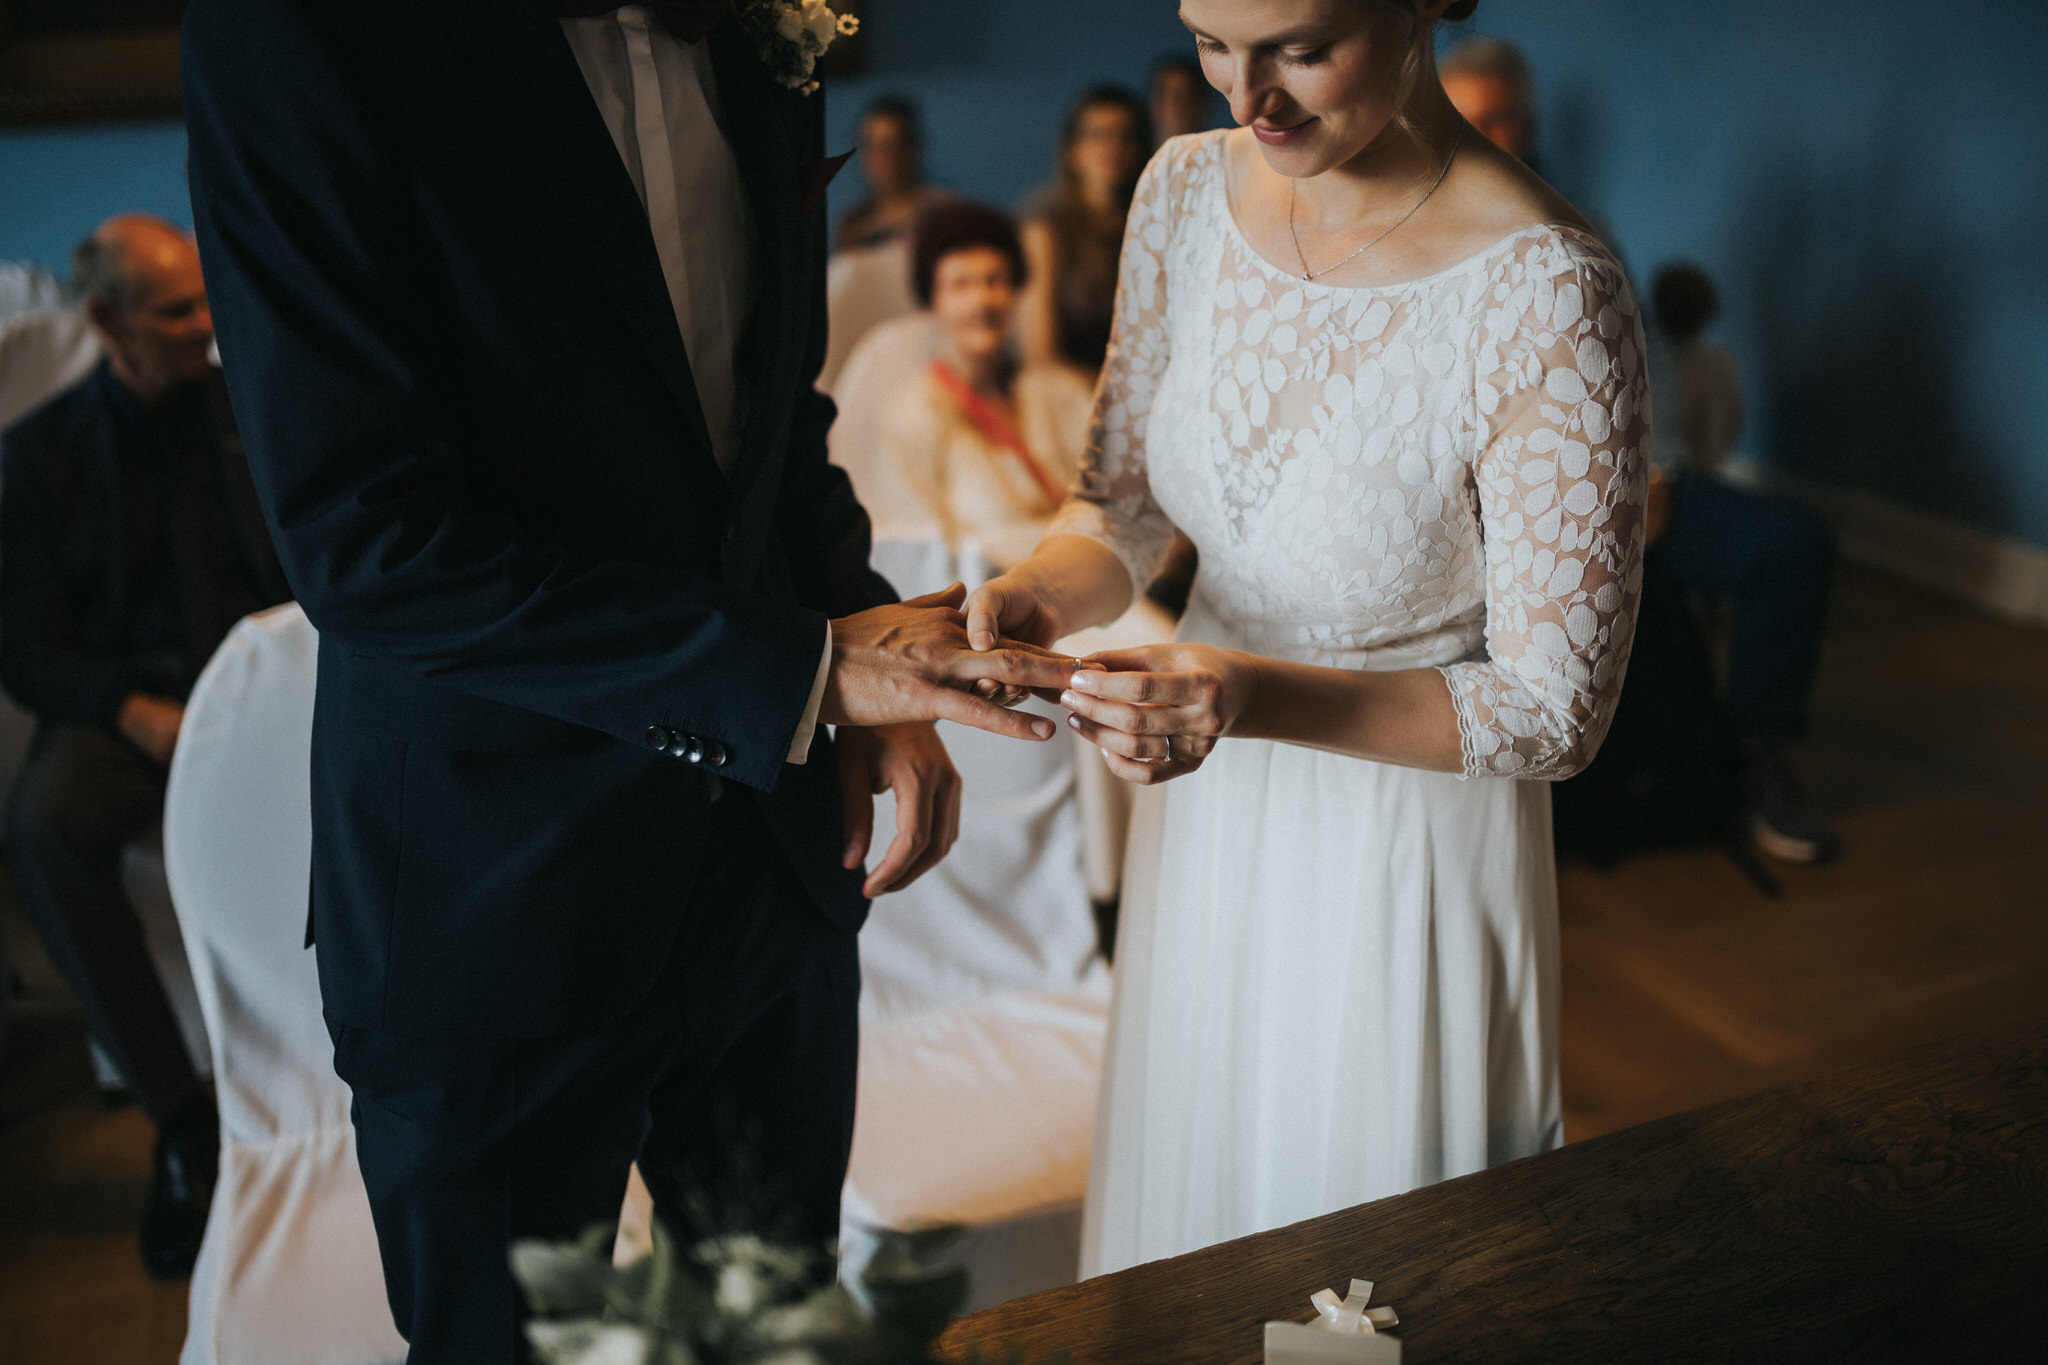 Romantische standesamtliche Trauung im Blauen Saal von Schloss Friedrichstein – Das Brautpaar gibt sich das Ja-Wort in einer eleganten und intimen Zeremonie, umgeben von der königlichen Aura dieses prachtvollen Saals